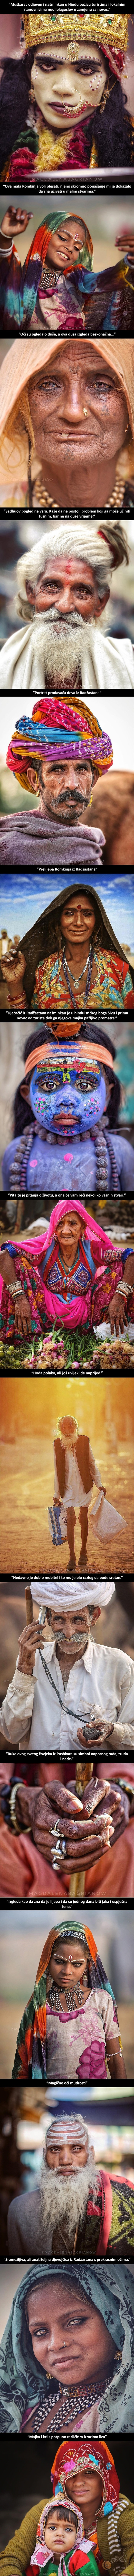 Fotografkinja je putovala Indijom i svojim slikama pokazala ljepotu lokalnog stanovništva